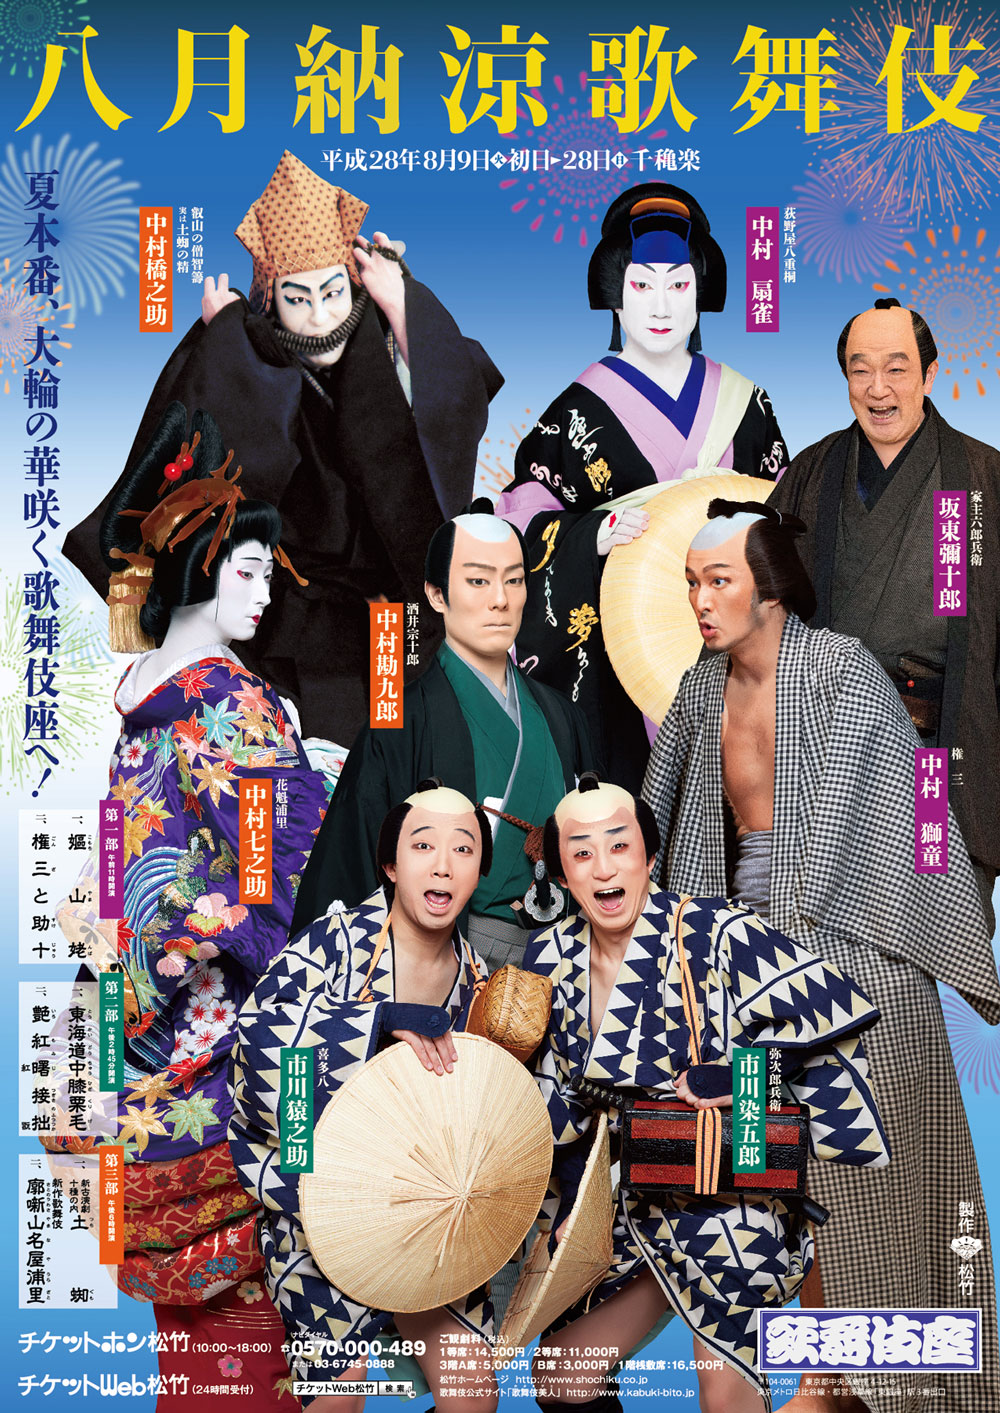 歌舞伎座「八月納涼歌舞伎」特別ポスター